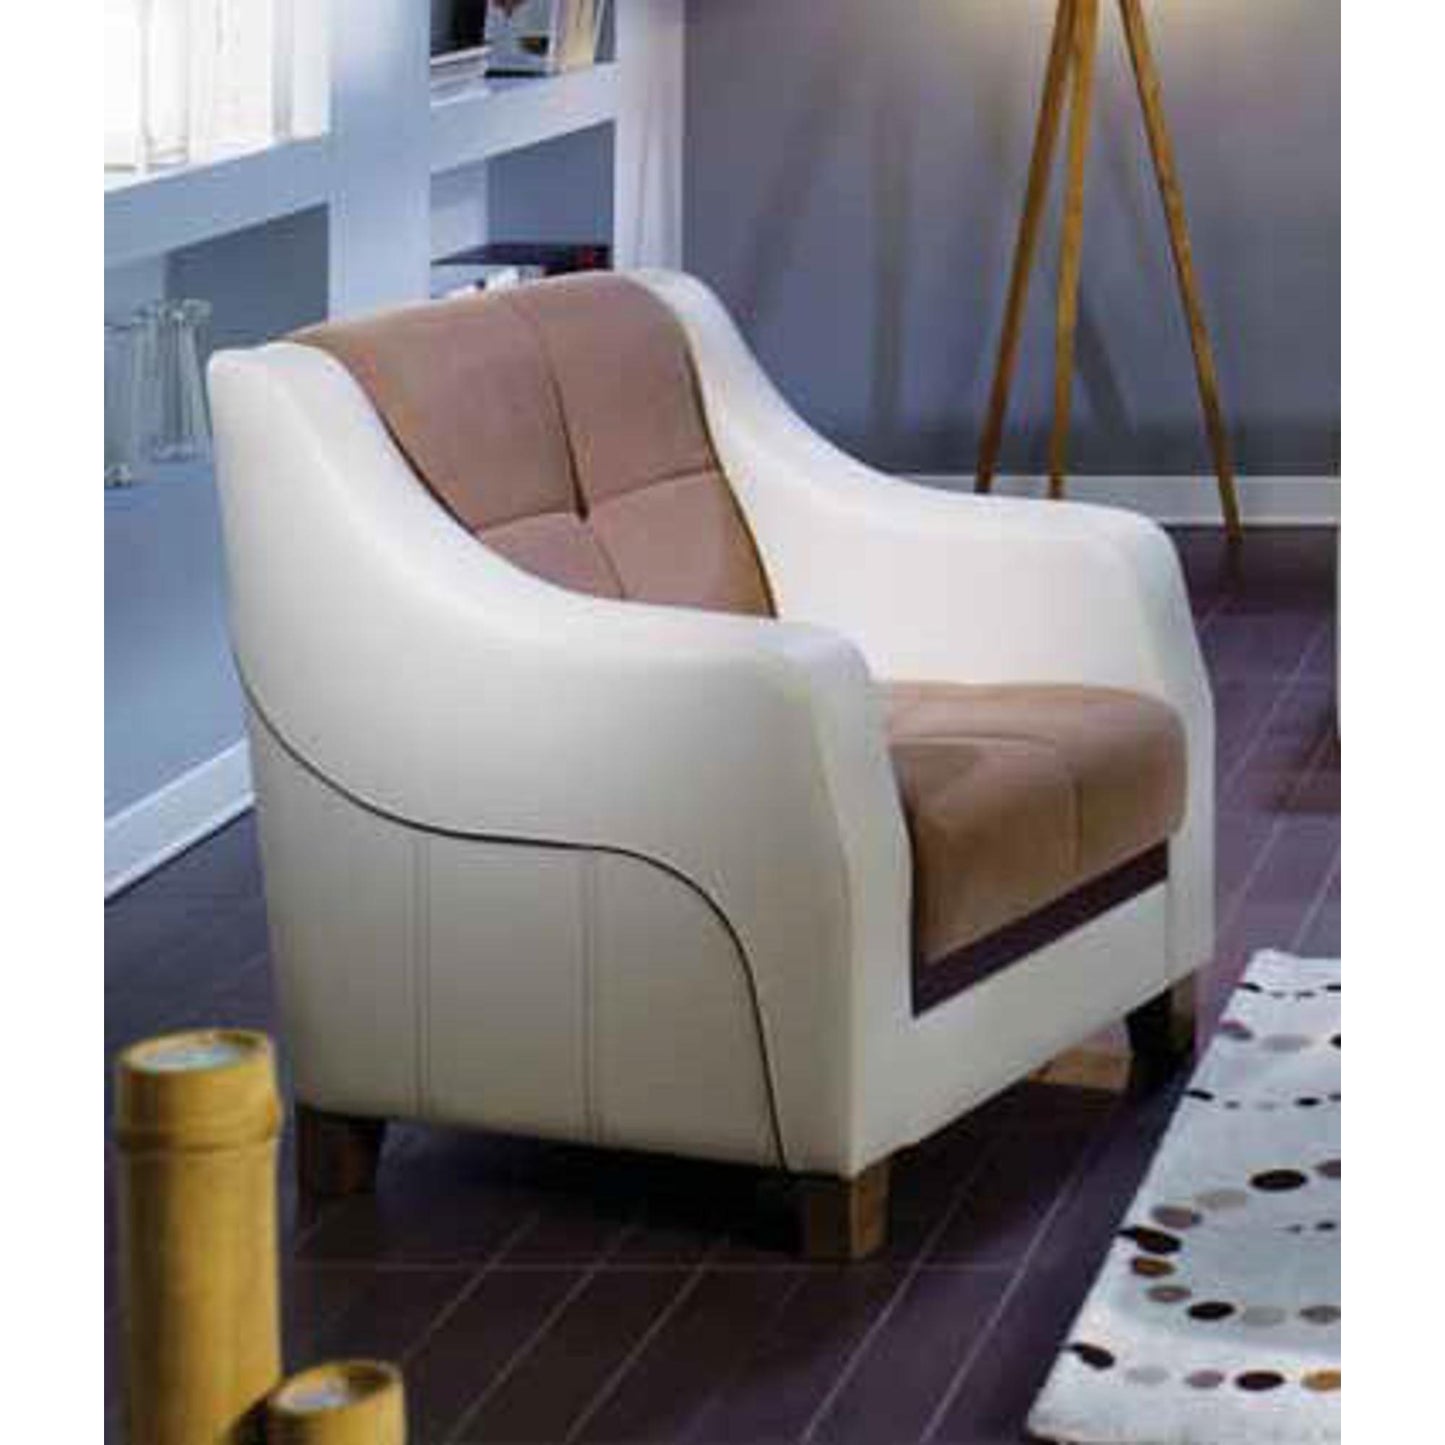 Ultra Sectional Sofa in Optimum Brown